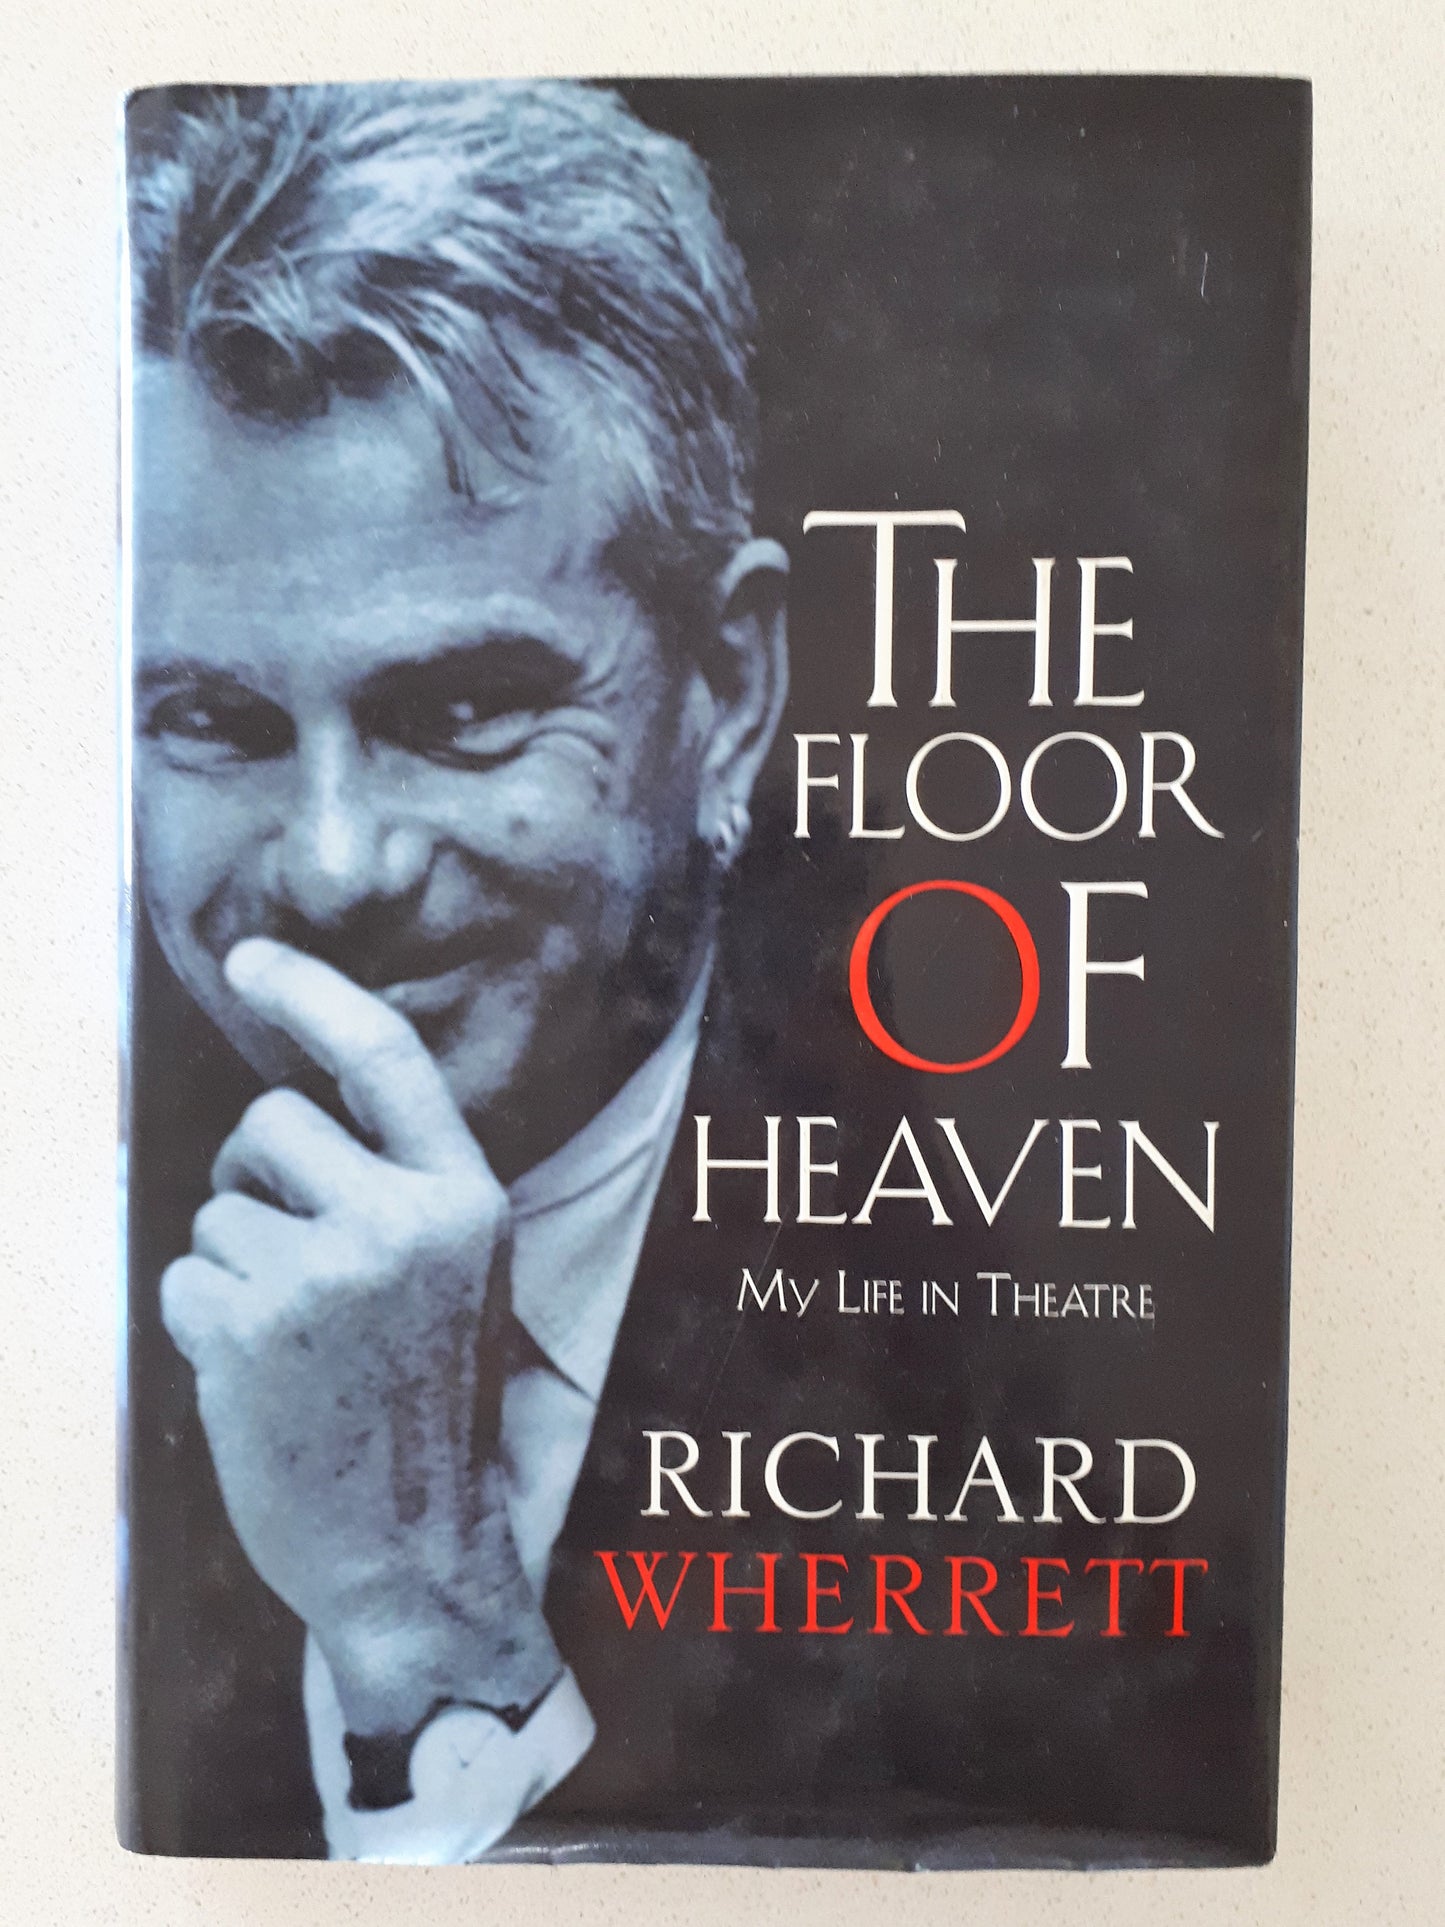 The Floor Of Heaven by Richard Wherrett